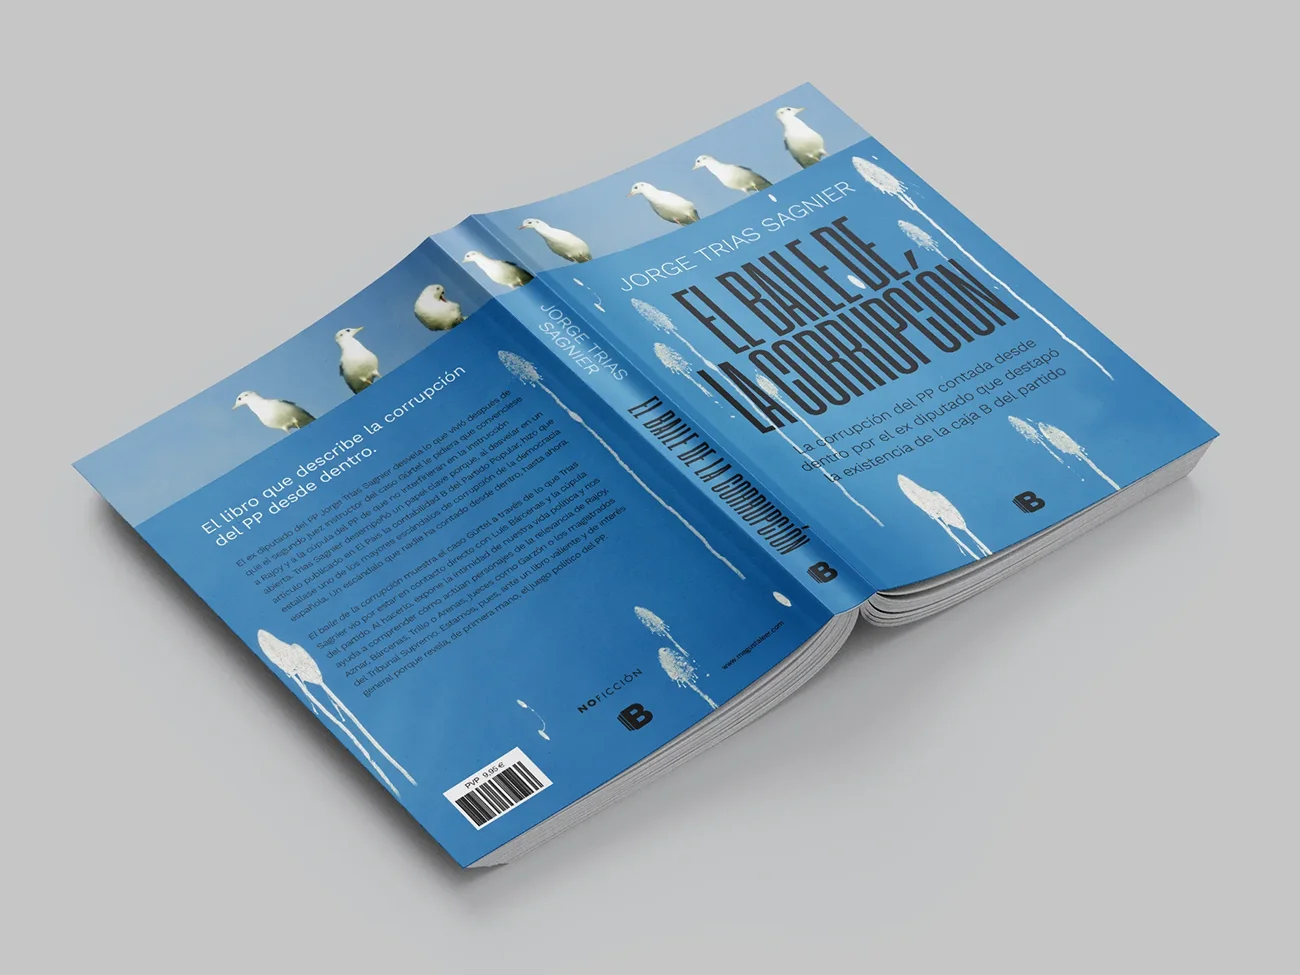 Diseño editorial libros- portada el baile de la corrupción